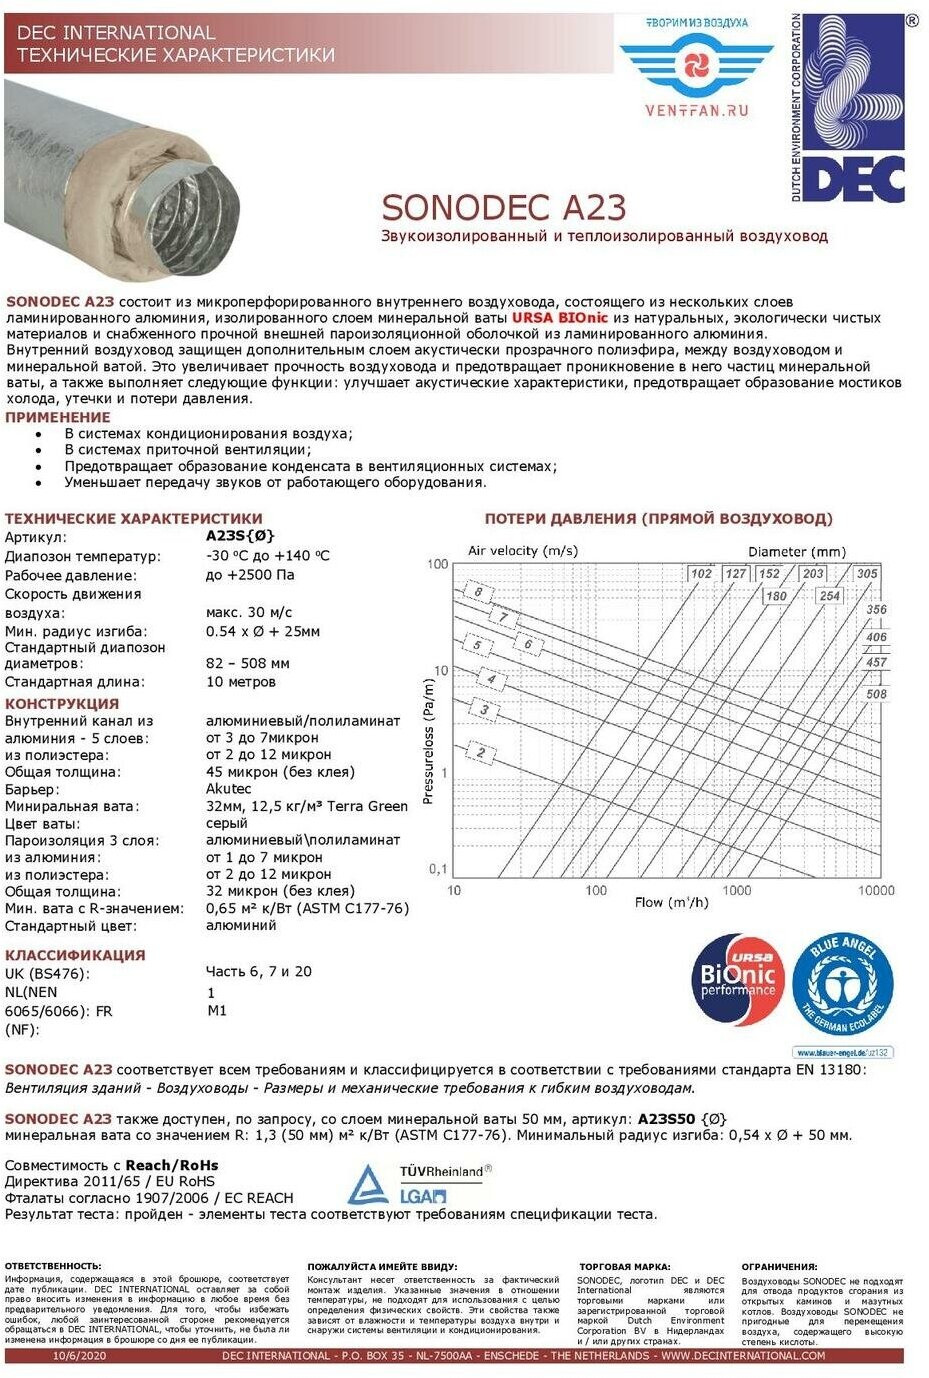 Звукоизолированный, утепленный минеральной ватой 32мм, гибкий алюминиевый воздуховод Sonodec A23S-152mm x 10м голландской компании DEC International - фотография № 4